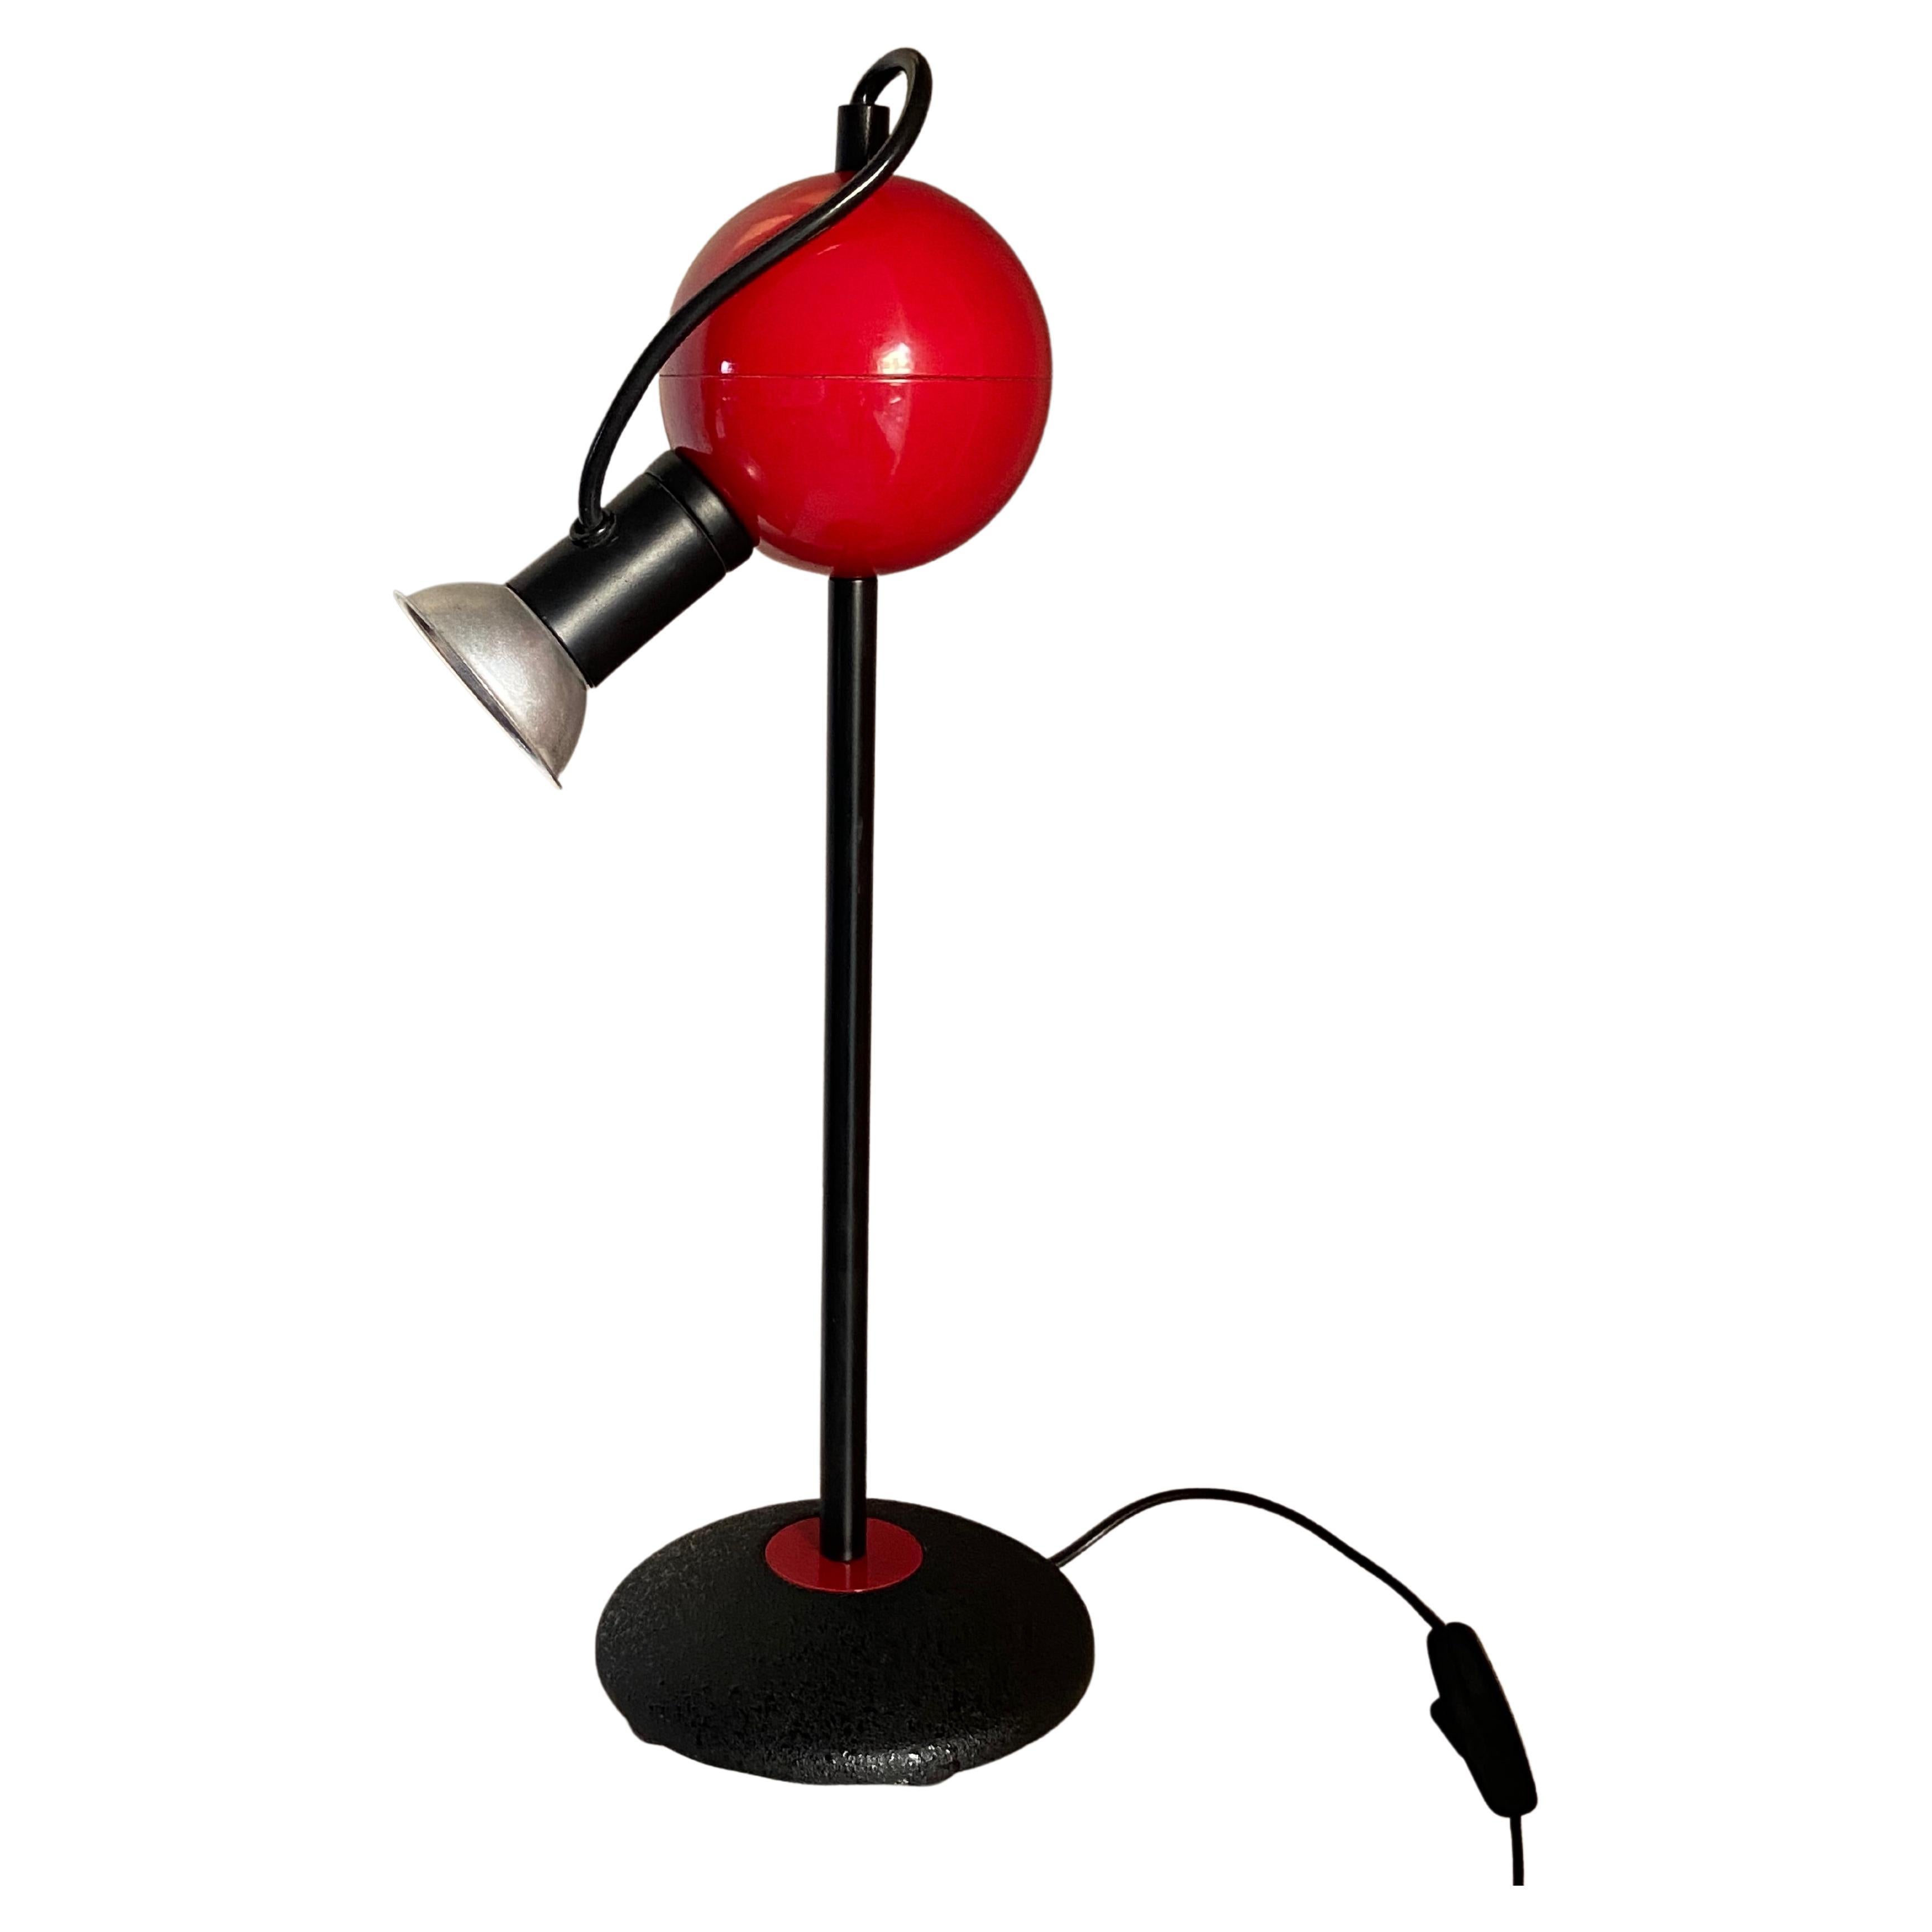 Lampe de table Stefano Cevoli du design des années 1980 produite par Vermezzo, fabriquée en Italie